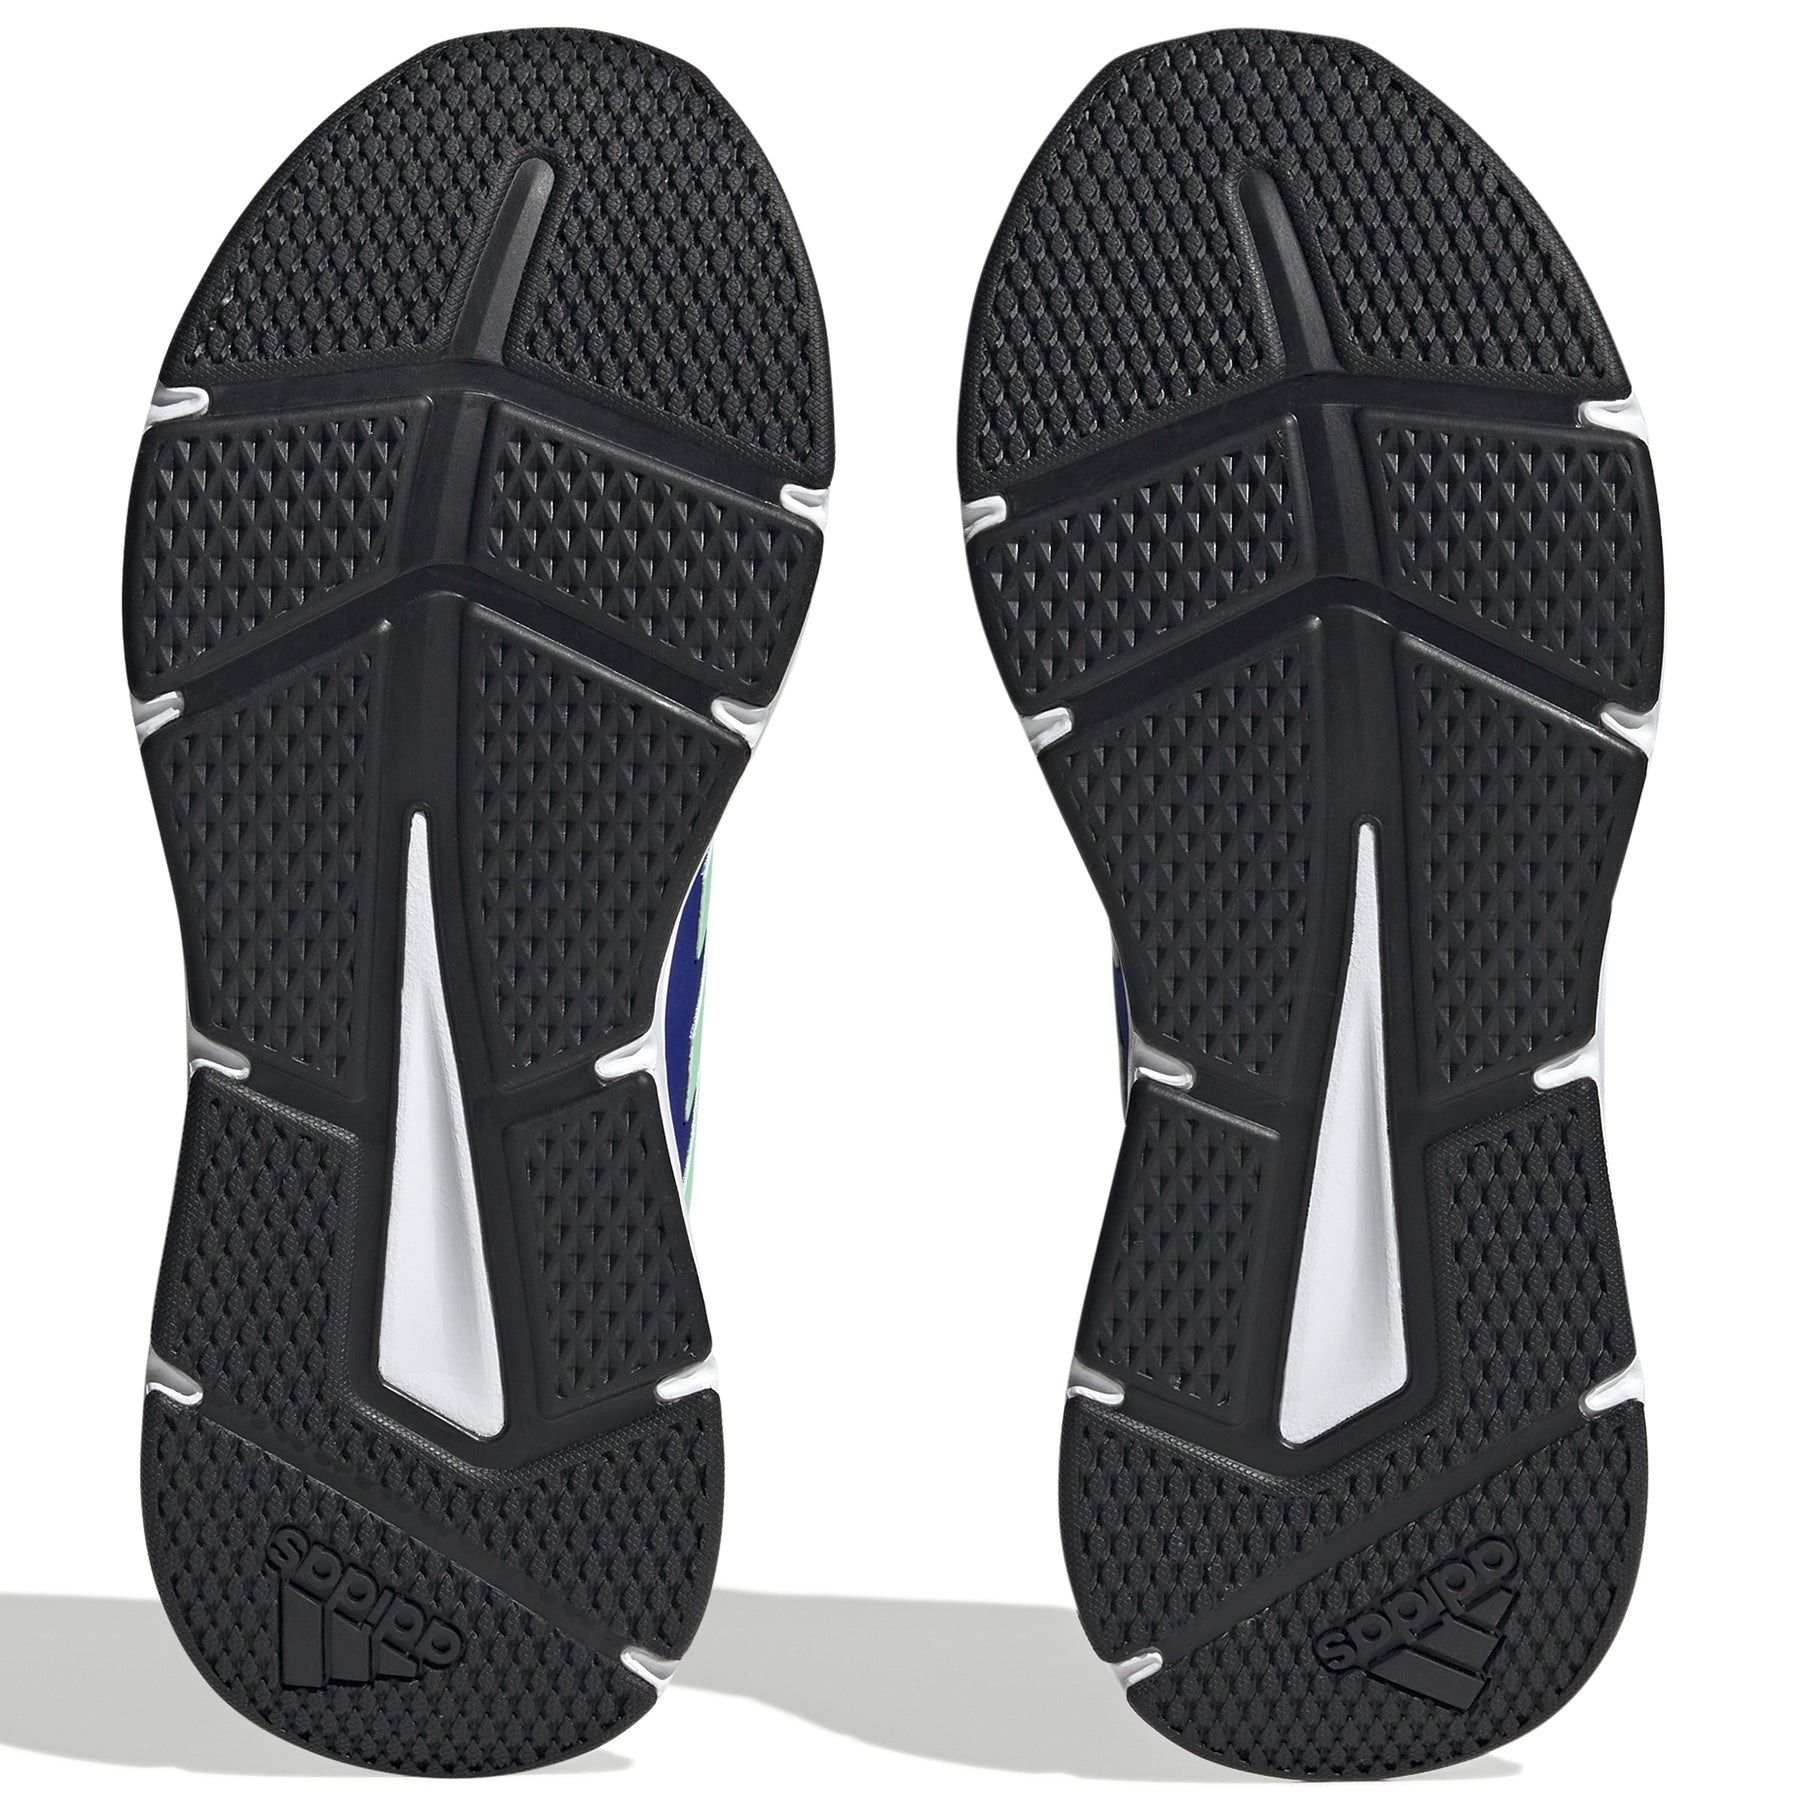 Zapatillas Adidas Hombre Running Galaxy 6 | HP2416